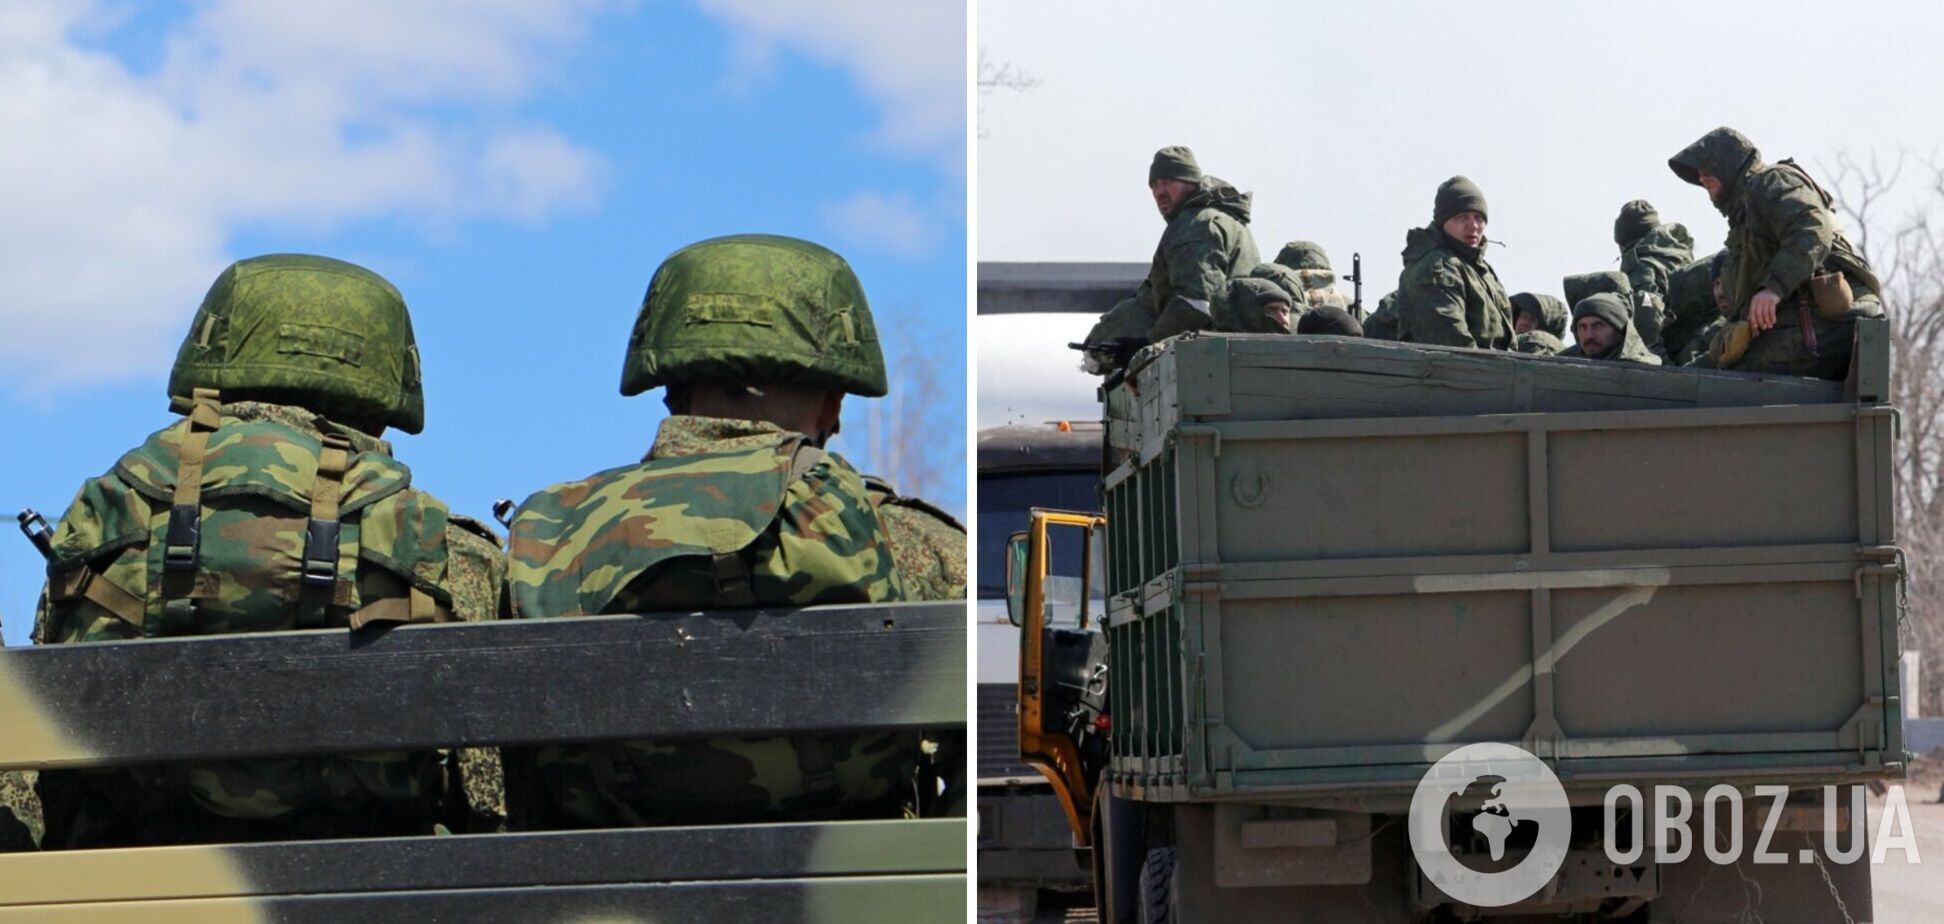 Росія має проблеми з виплатами для військових, а бойовики ПВК відмовляються воювати проти України – розвідка